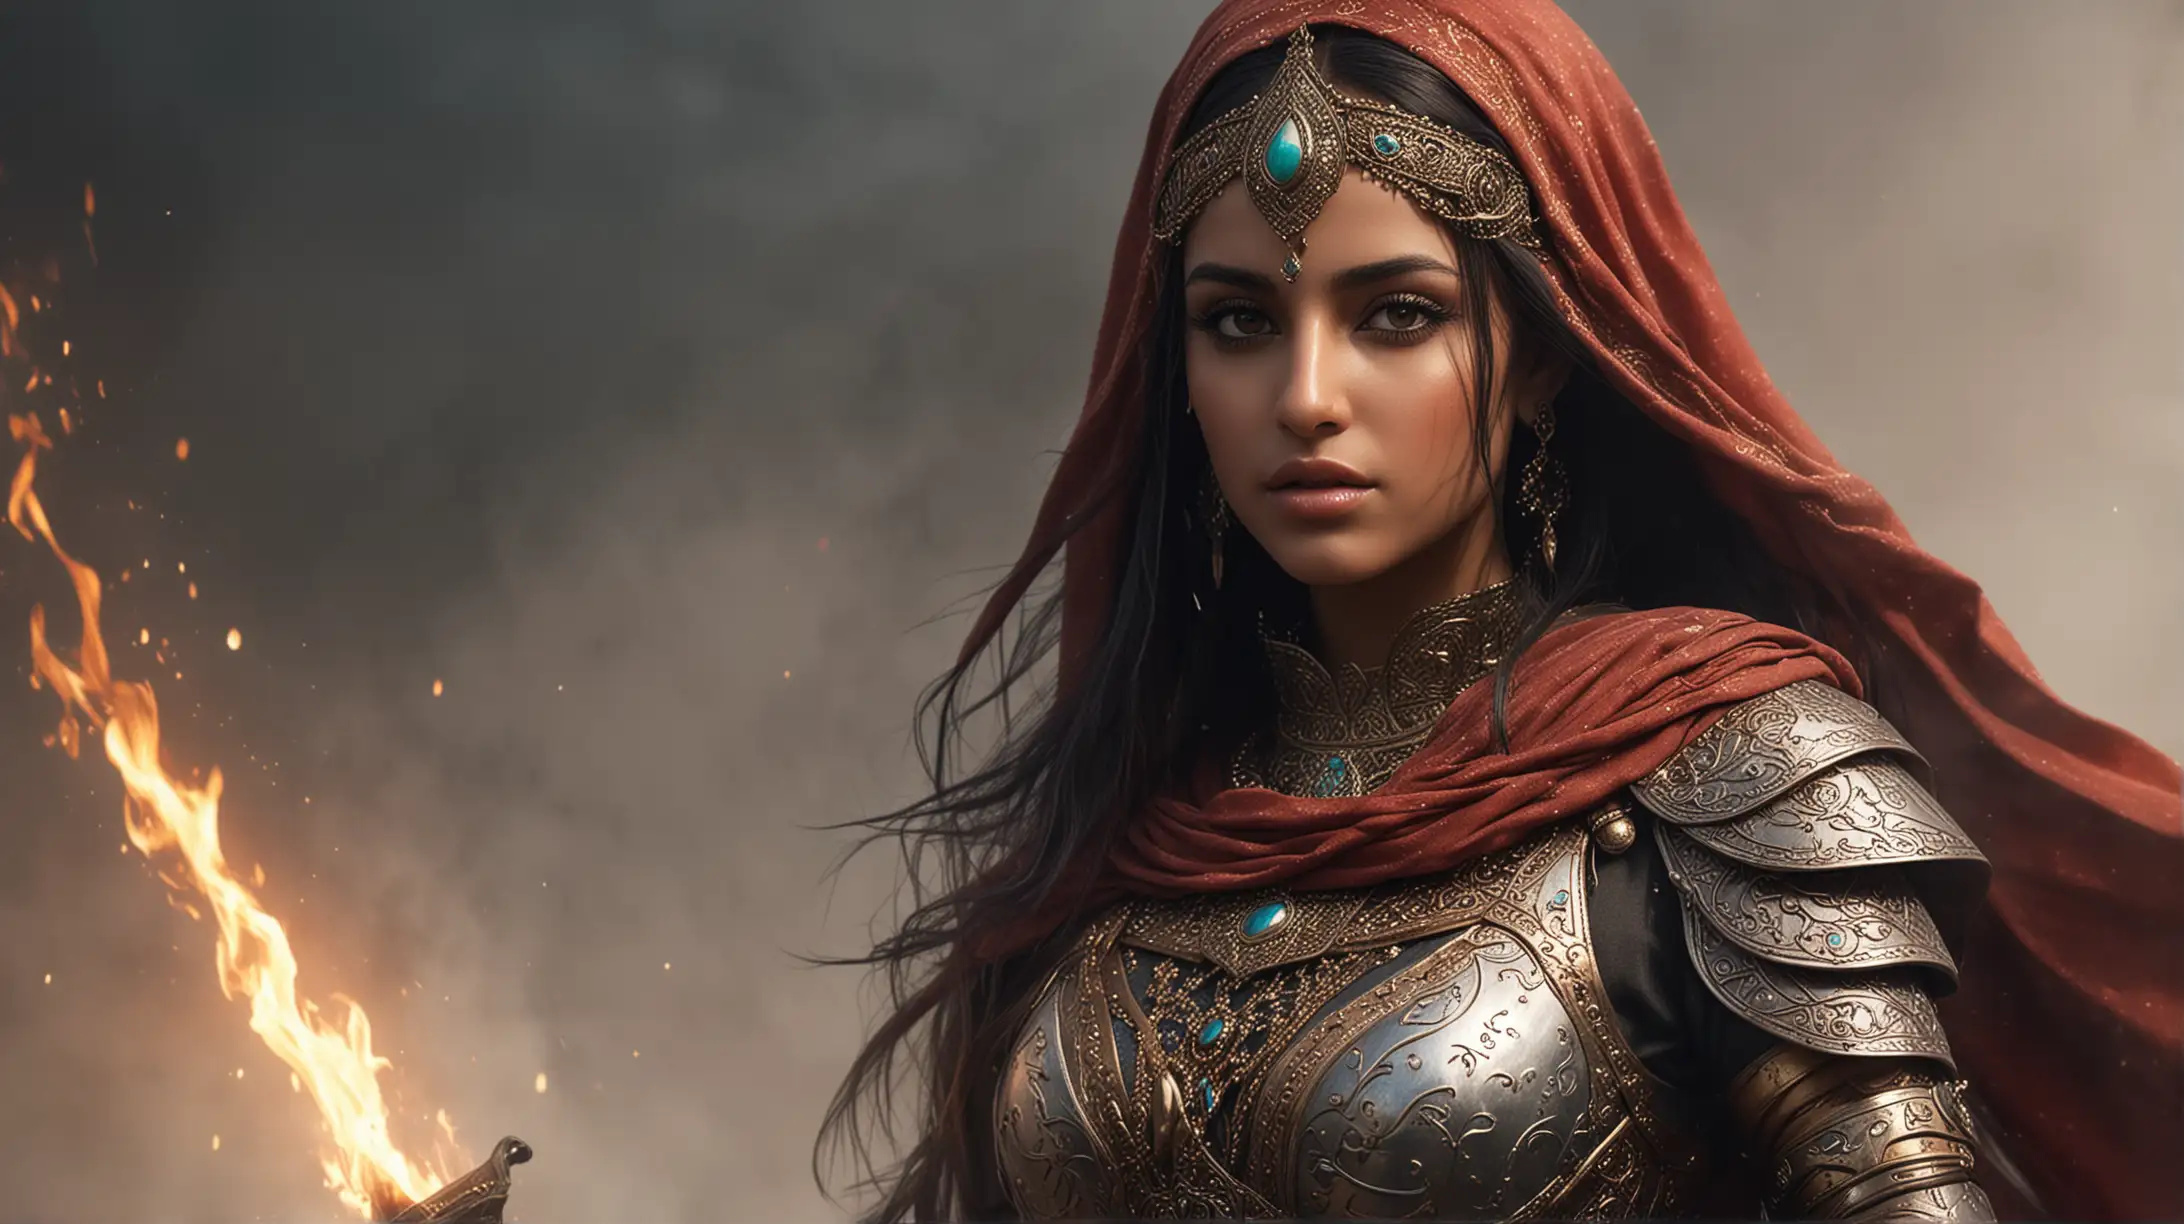 Mariam Said as Arabian princess warrior, detailed armor, magic, fire, fog